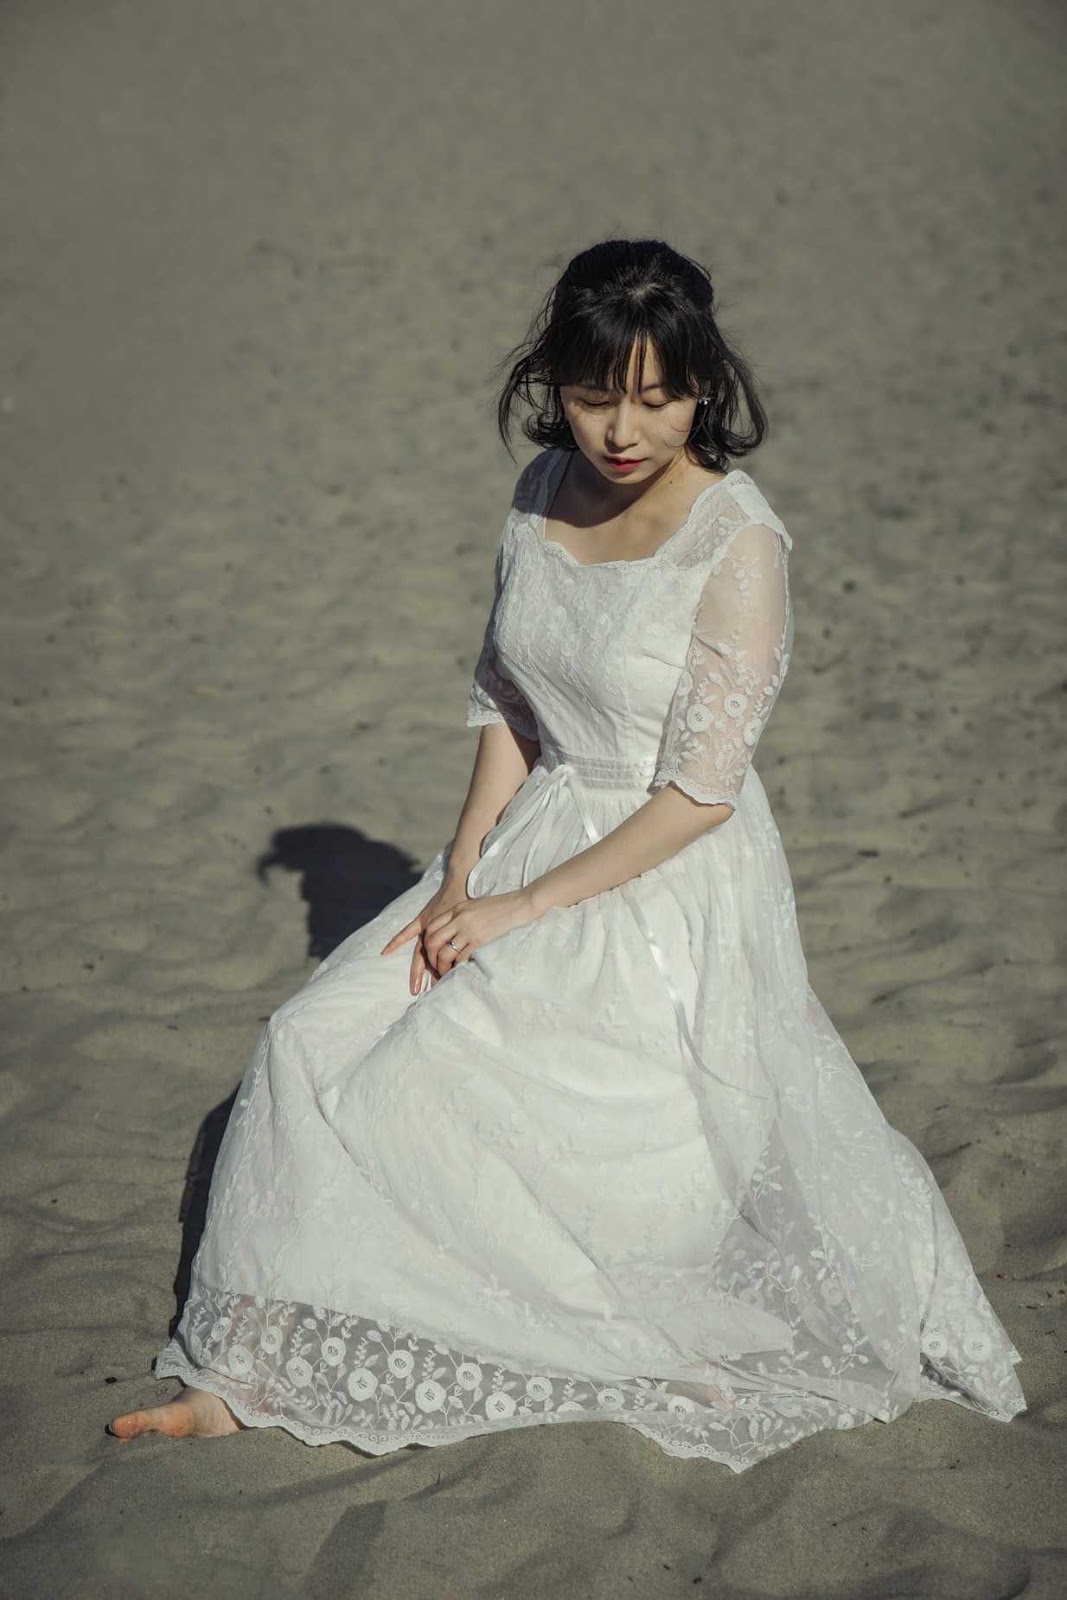 ウエディングドレスを着て砂浜に座っている女性